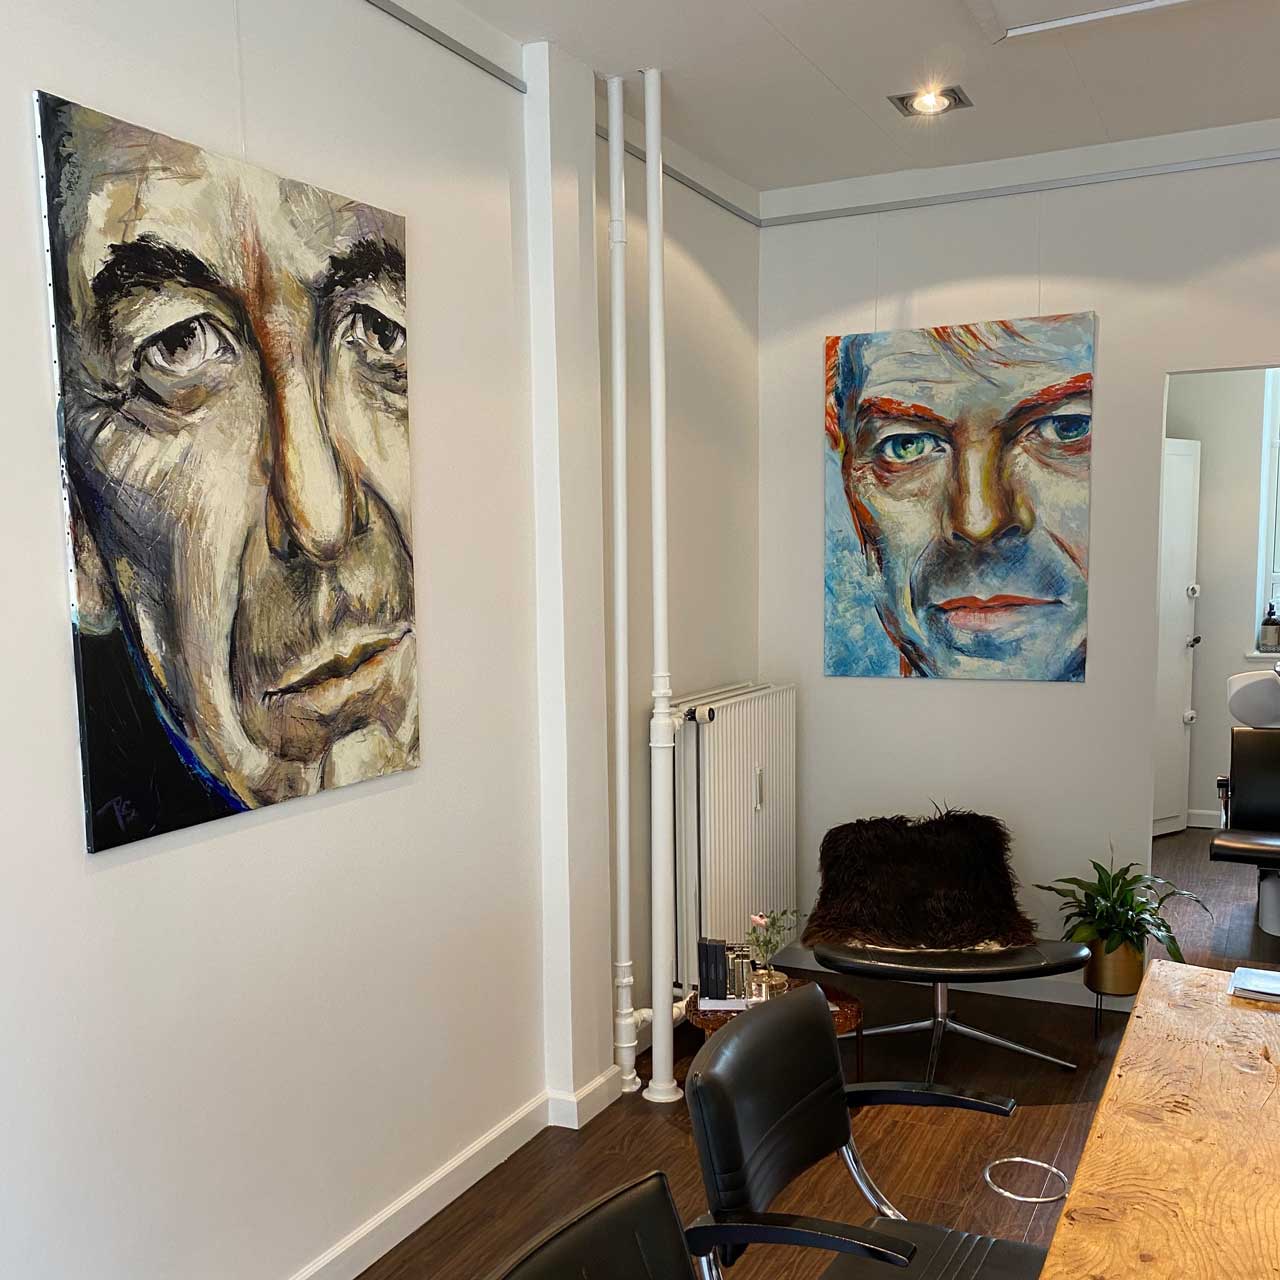 Portrætmalerier af Leonard Cohen og David Bowie. Format: 90 x 120 cm. Mixed media malet af portrætmaler Peter Simonsen i 2020